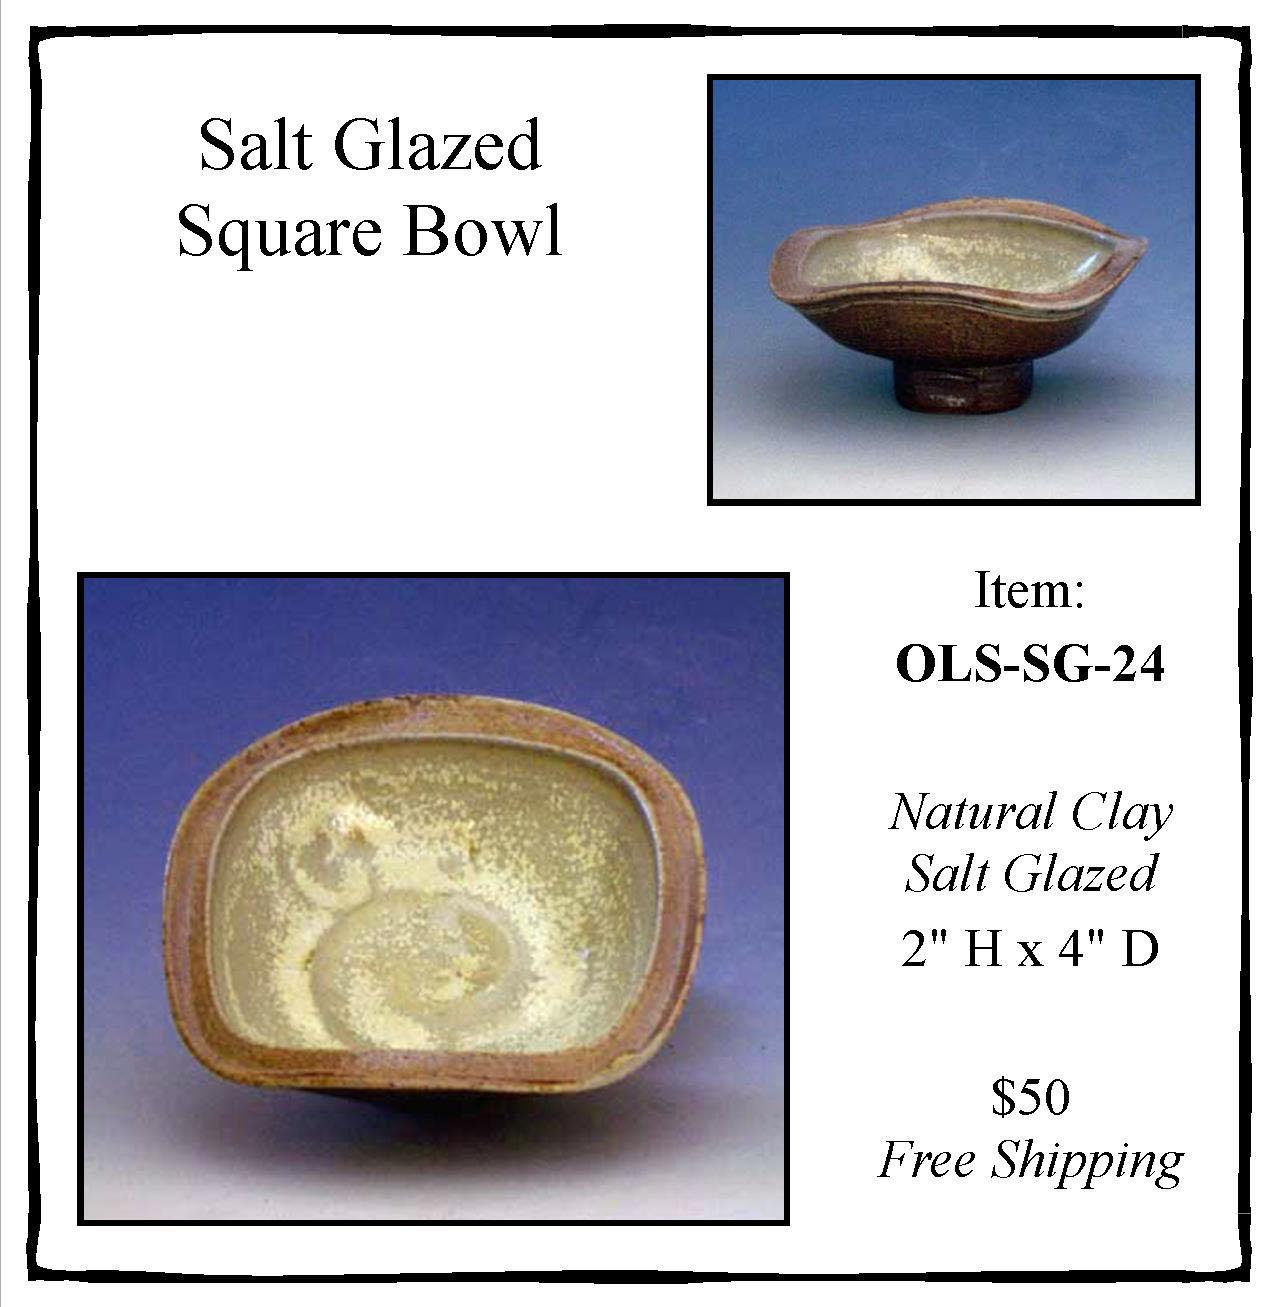 Salt-Glazed Square Bowl OLS-SG-24